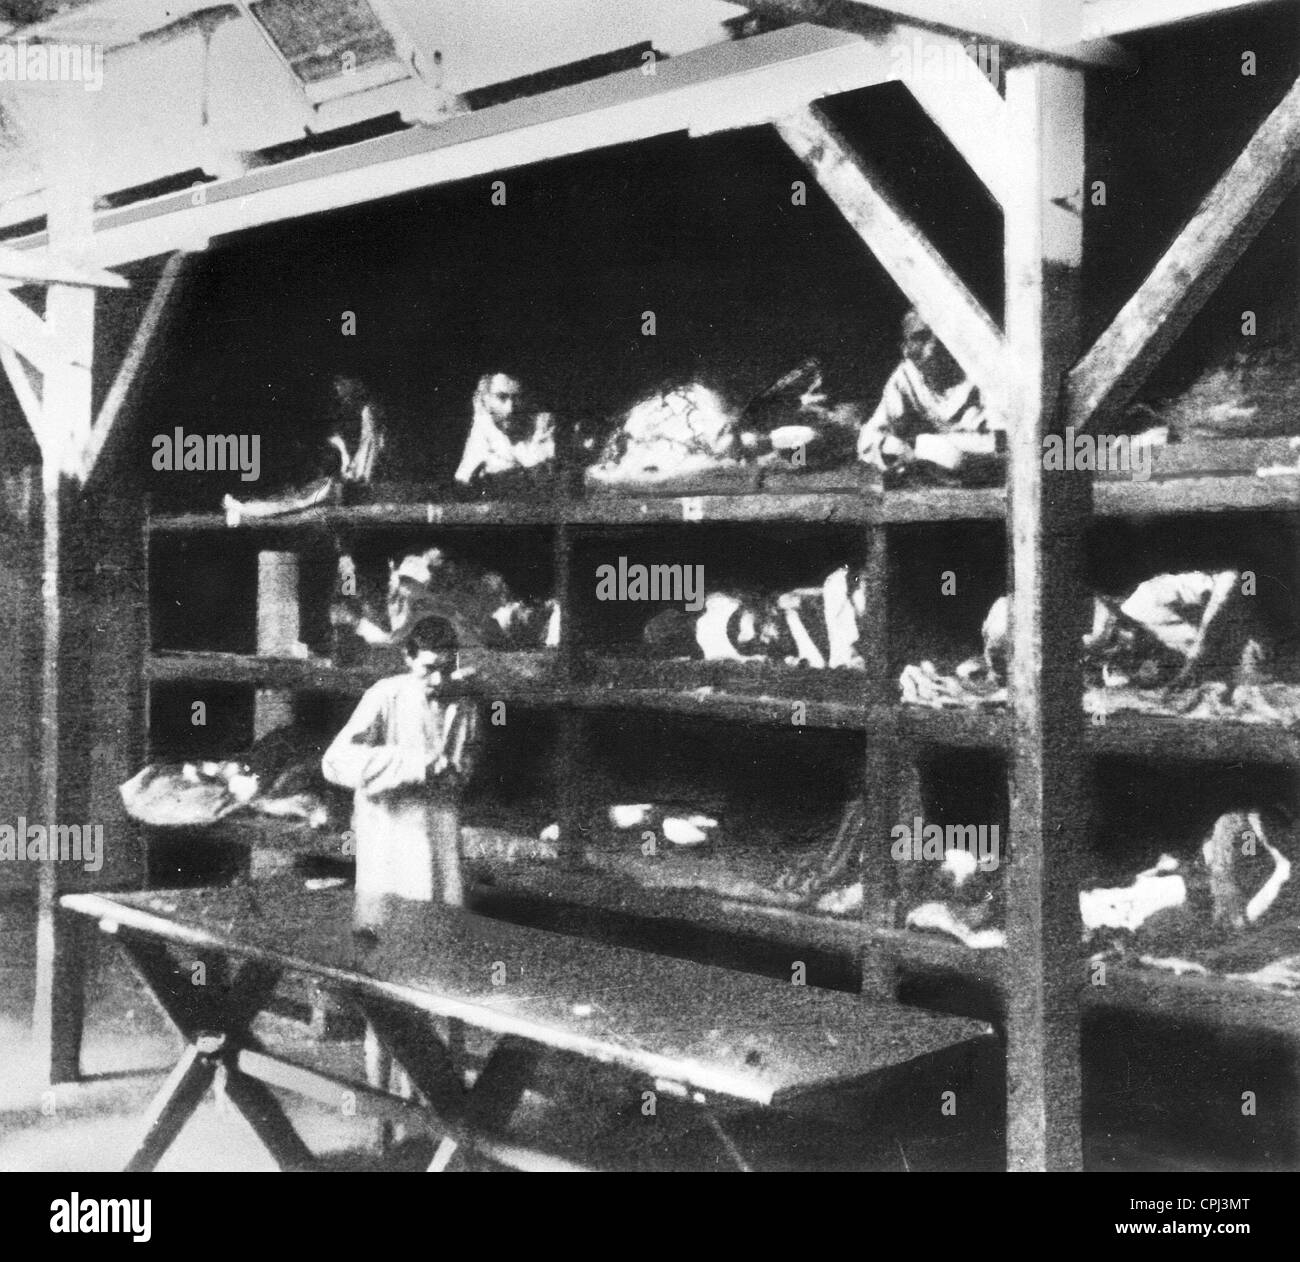 Les internés du camp dans l'aile de l'hôpital du camp de concentration de Mauthausen, 1938 (photo n/b) Banque D'Images